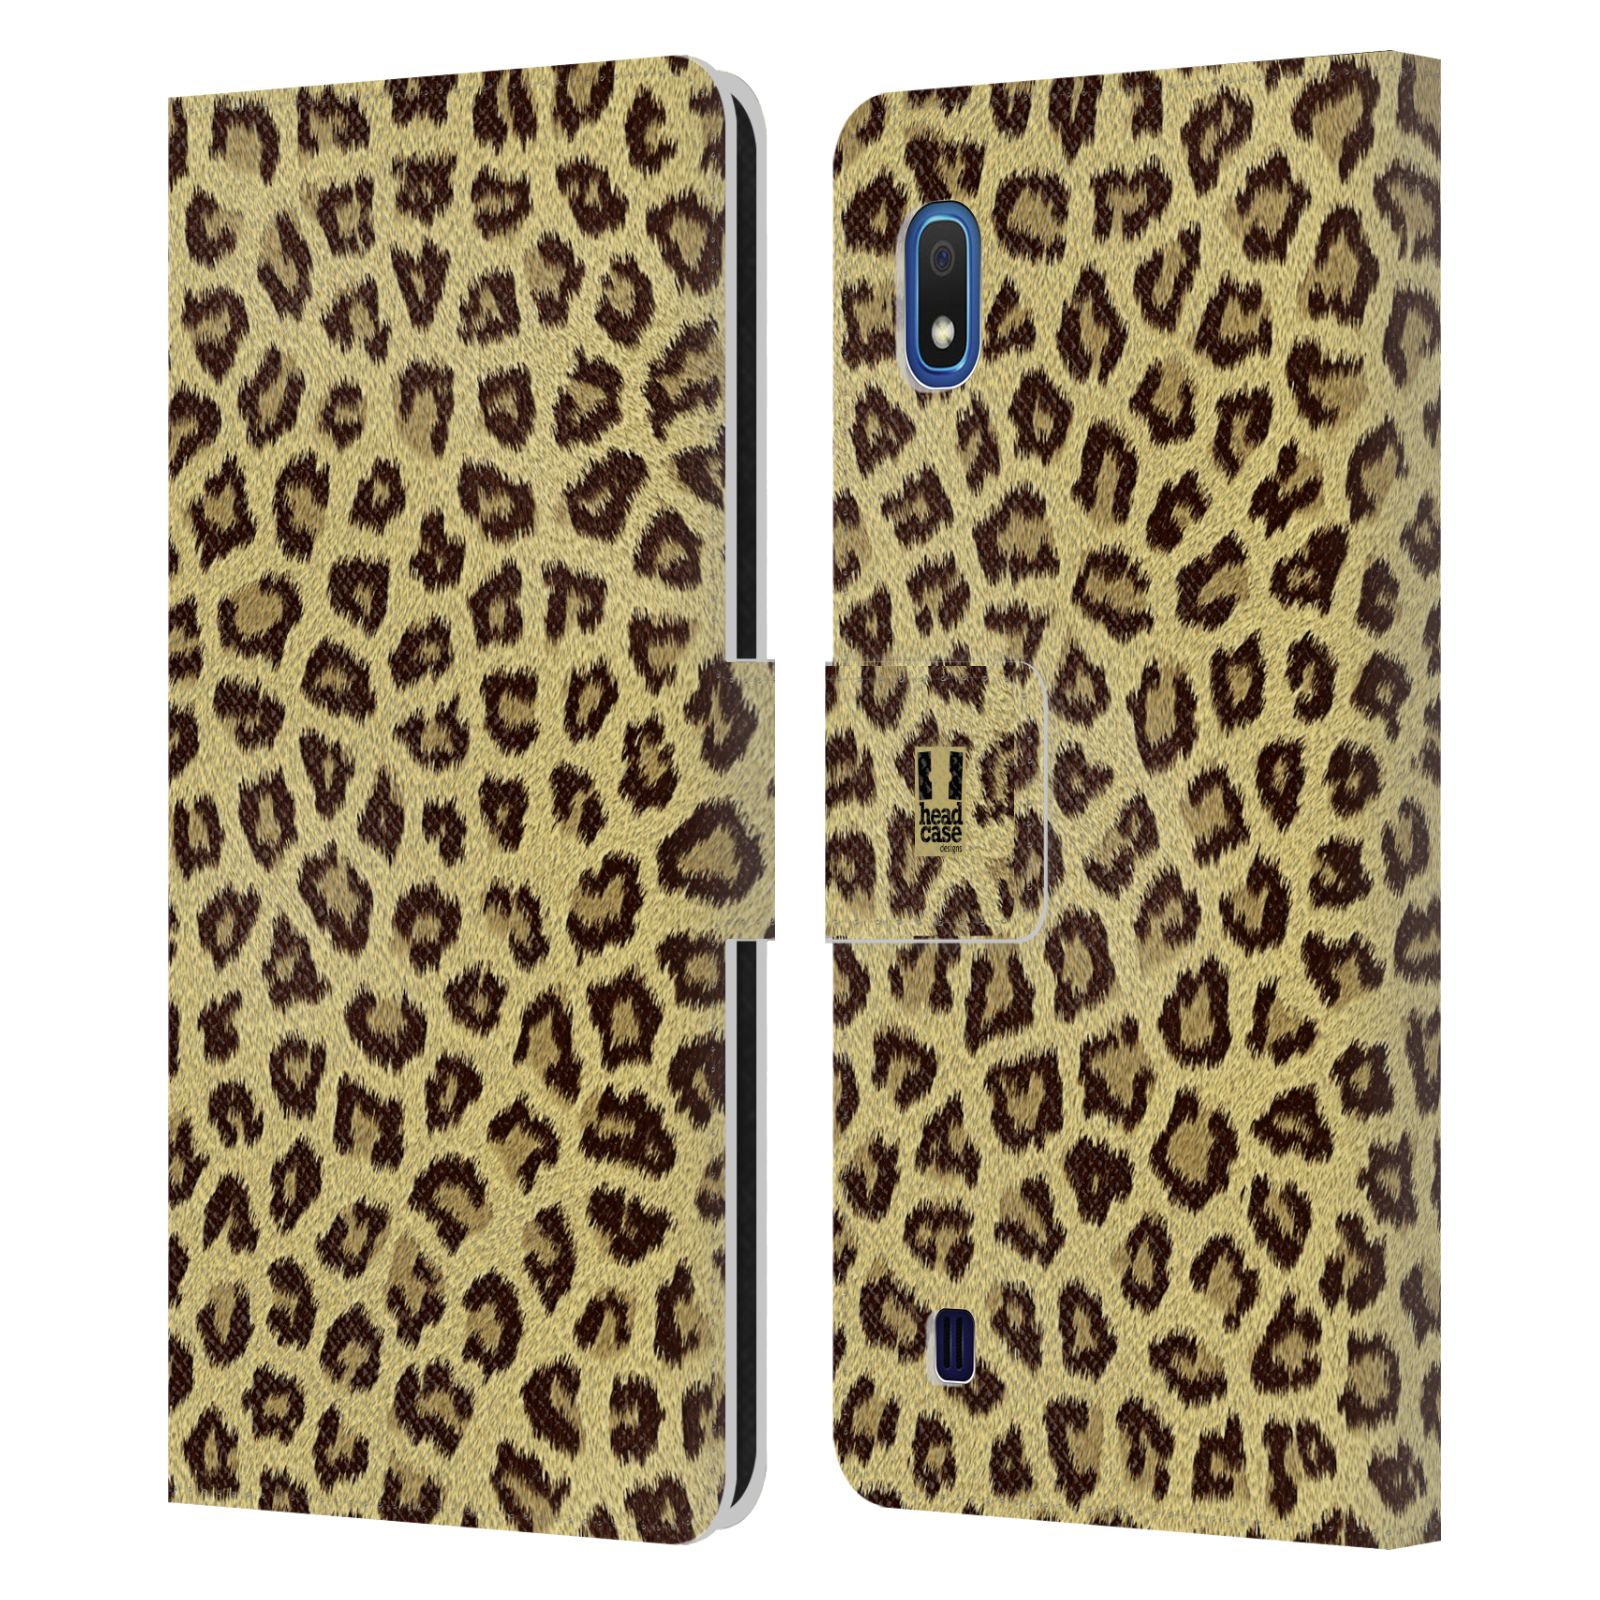 Pouzdro na mobil Samsung Galaxy A10 zvíře srst divoká kolekce jaguár, gepard